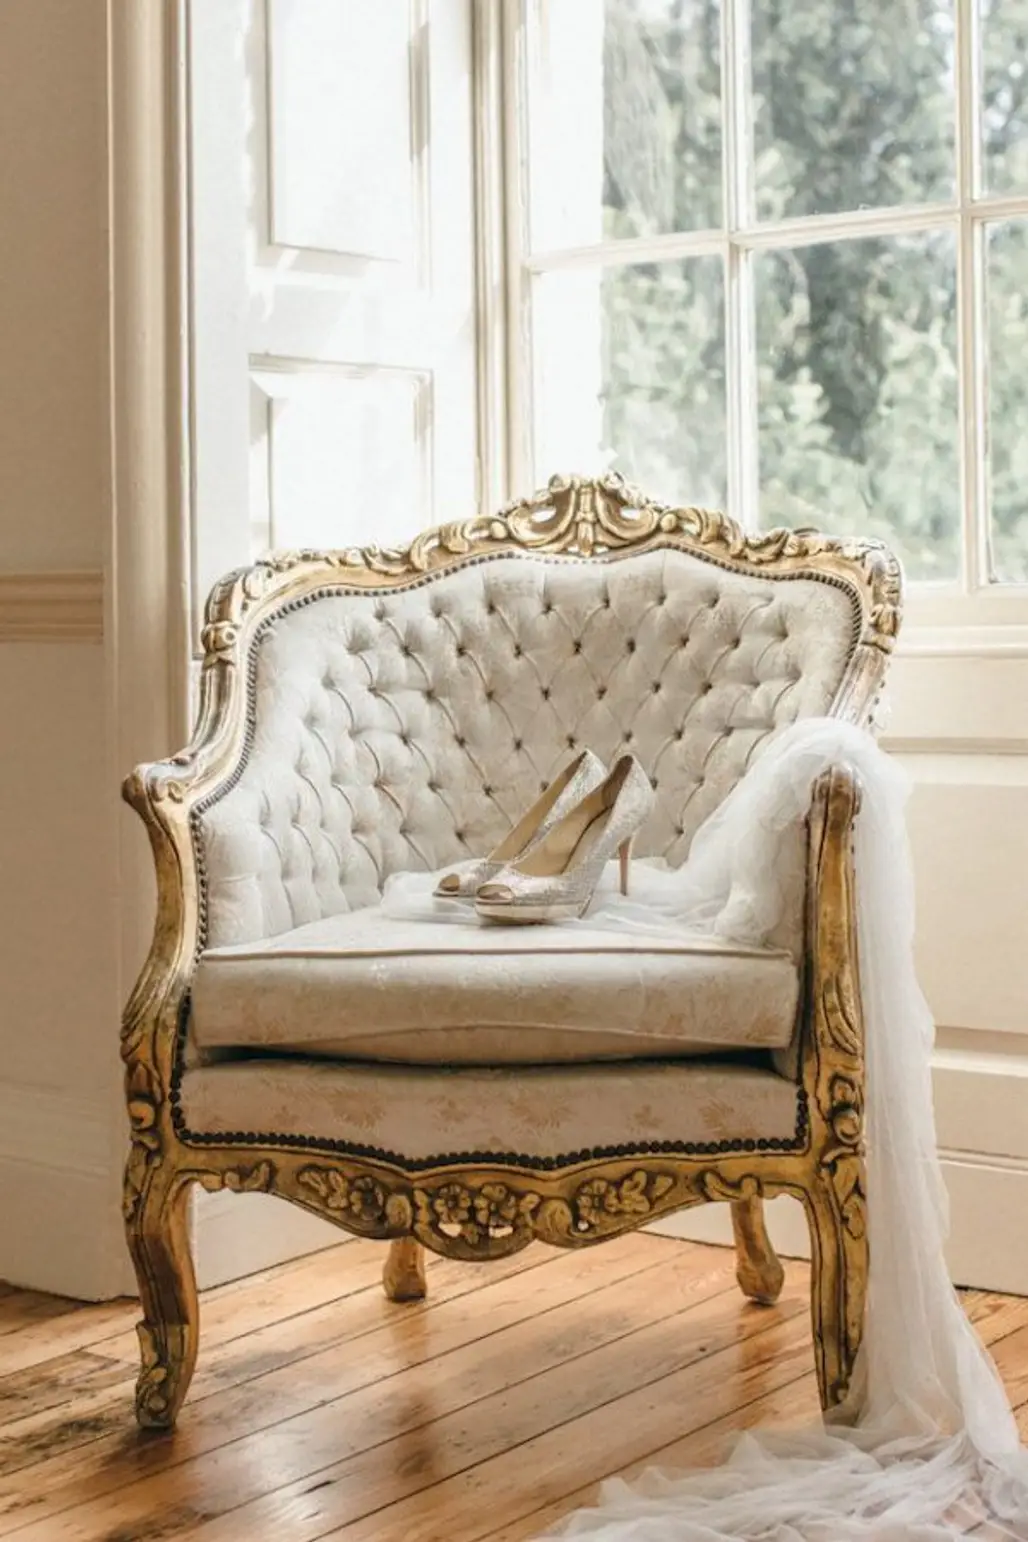 Ornate Vintage Chair